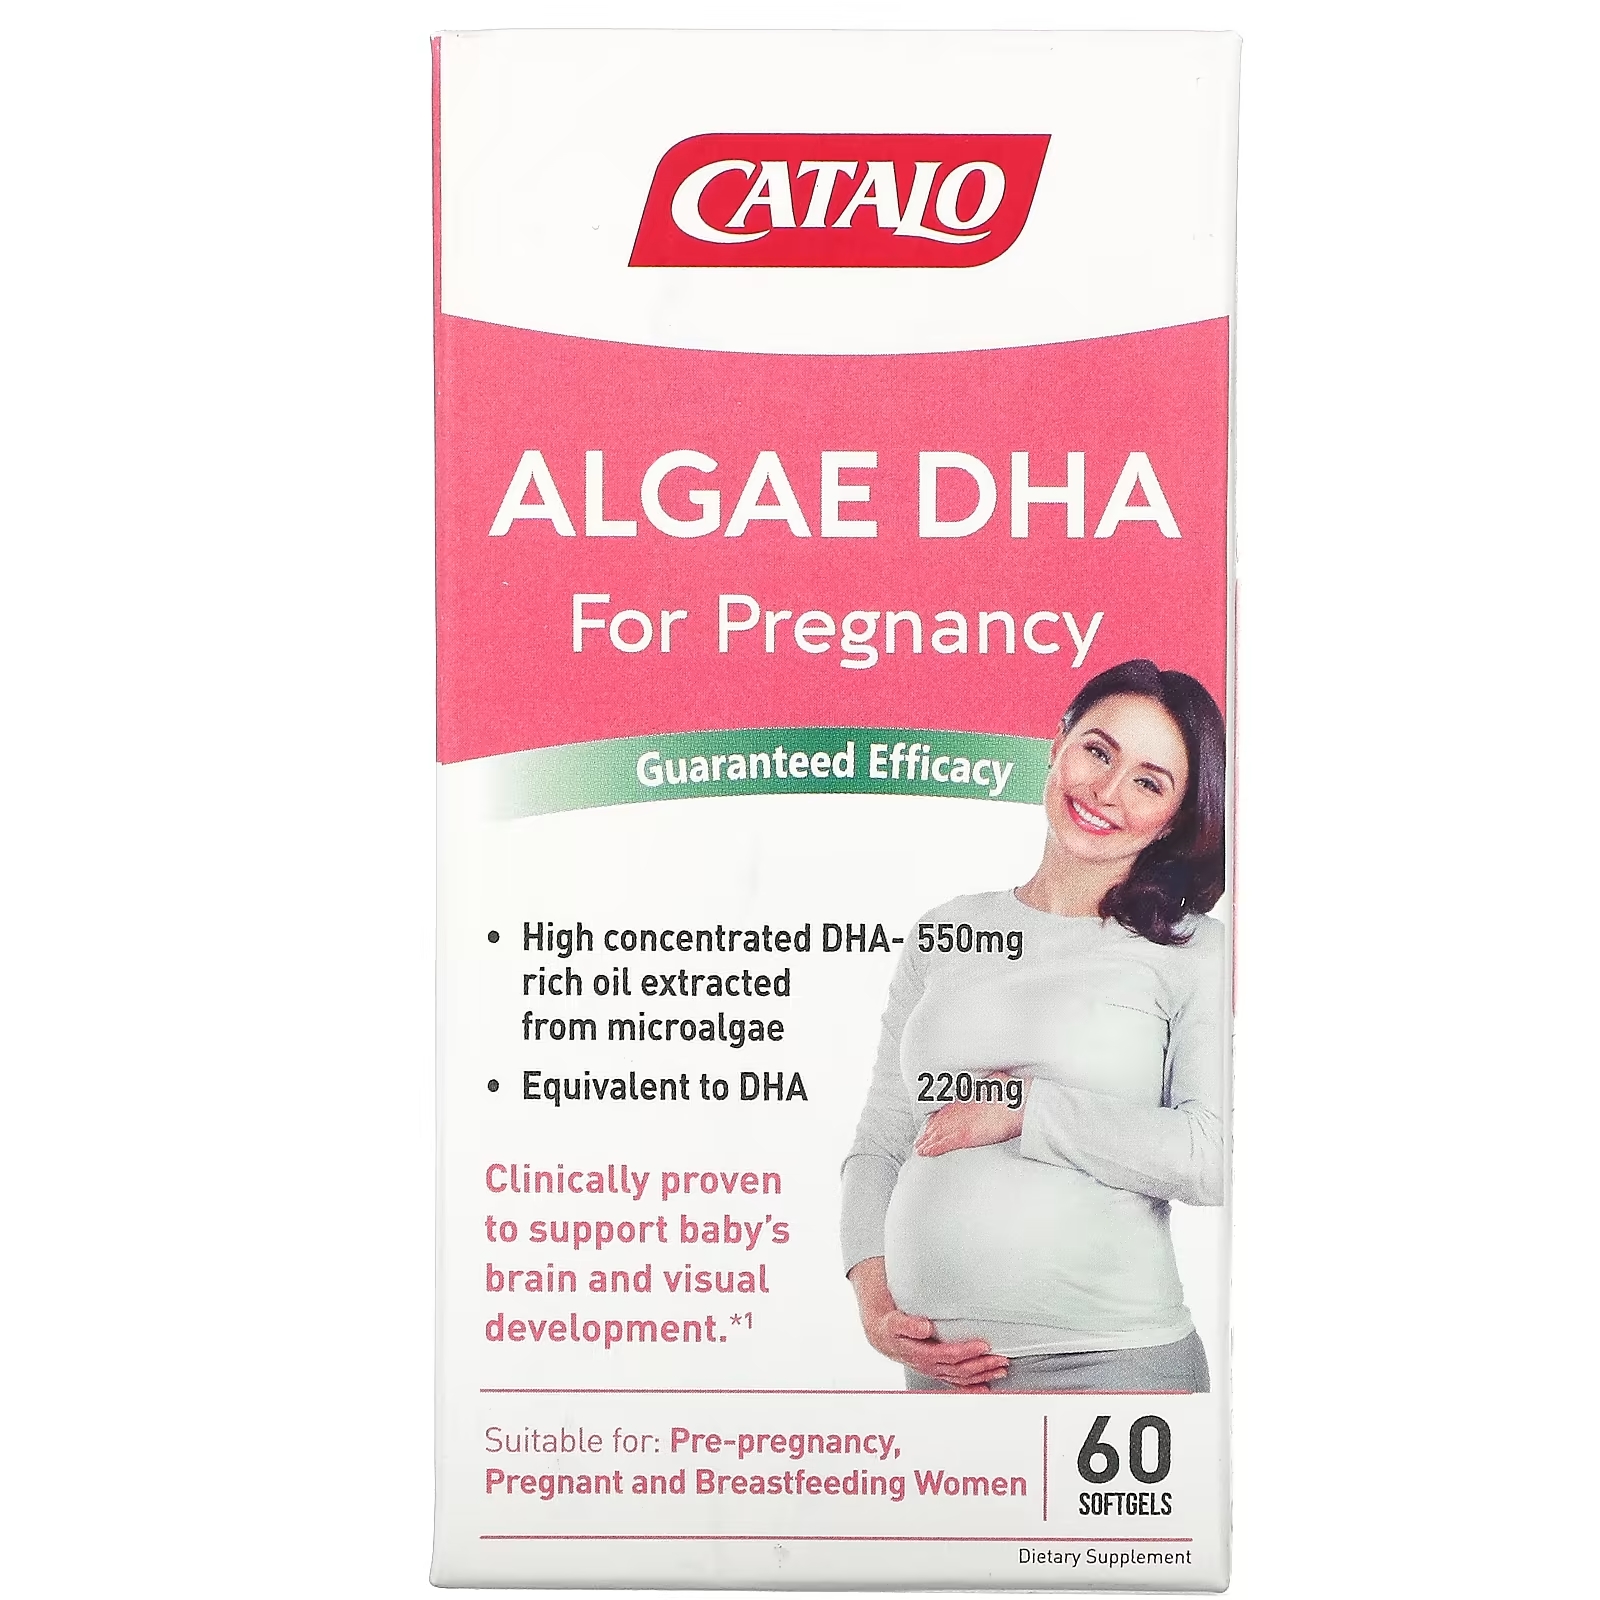 ДГК из Водорослей для Беременности Catalo Naturals, 60 мягких таблеток дгк из водорослей для беременности catalo naturals 60 мягких таблеток